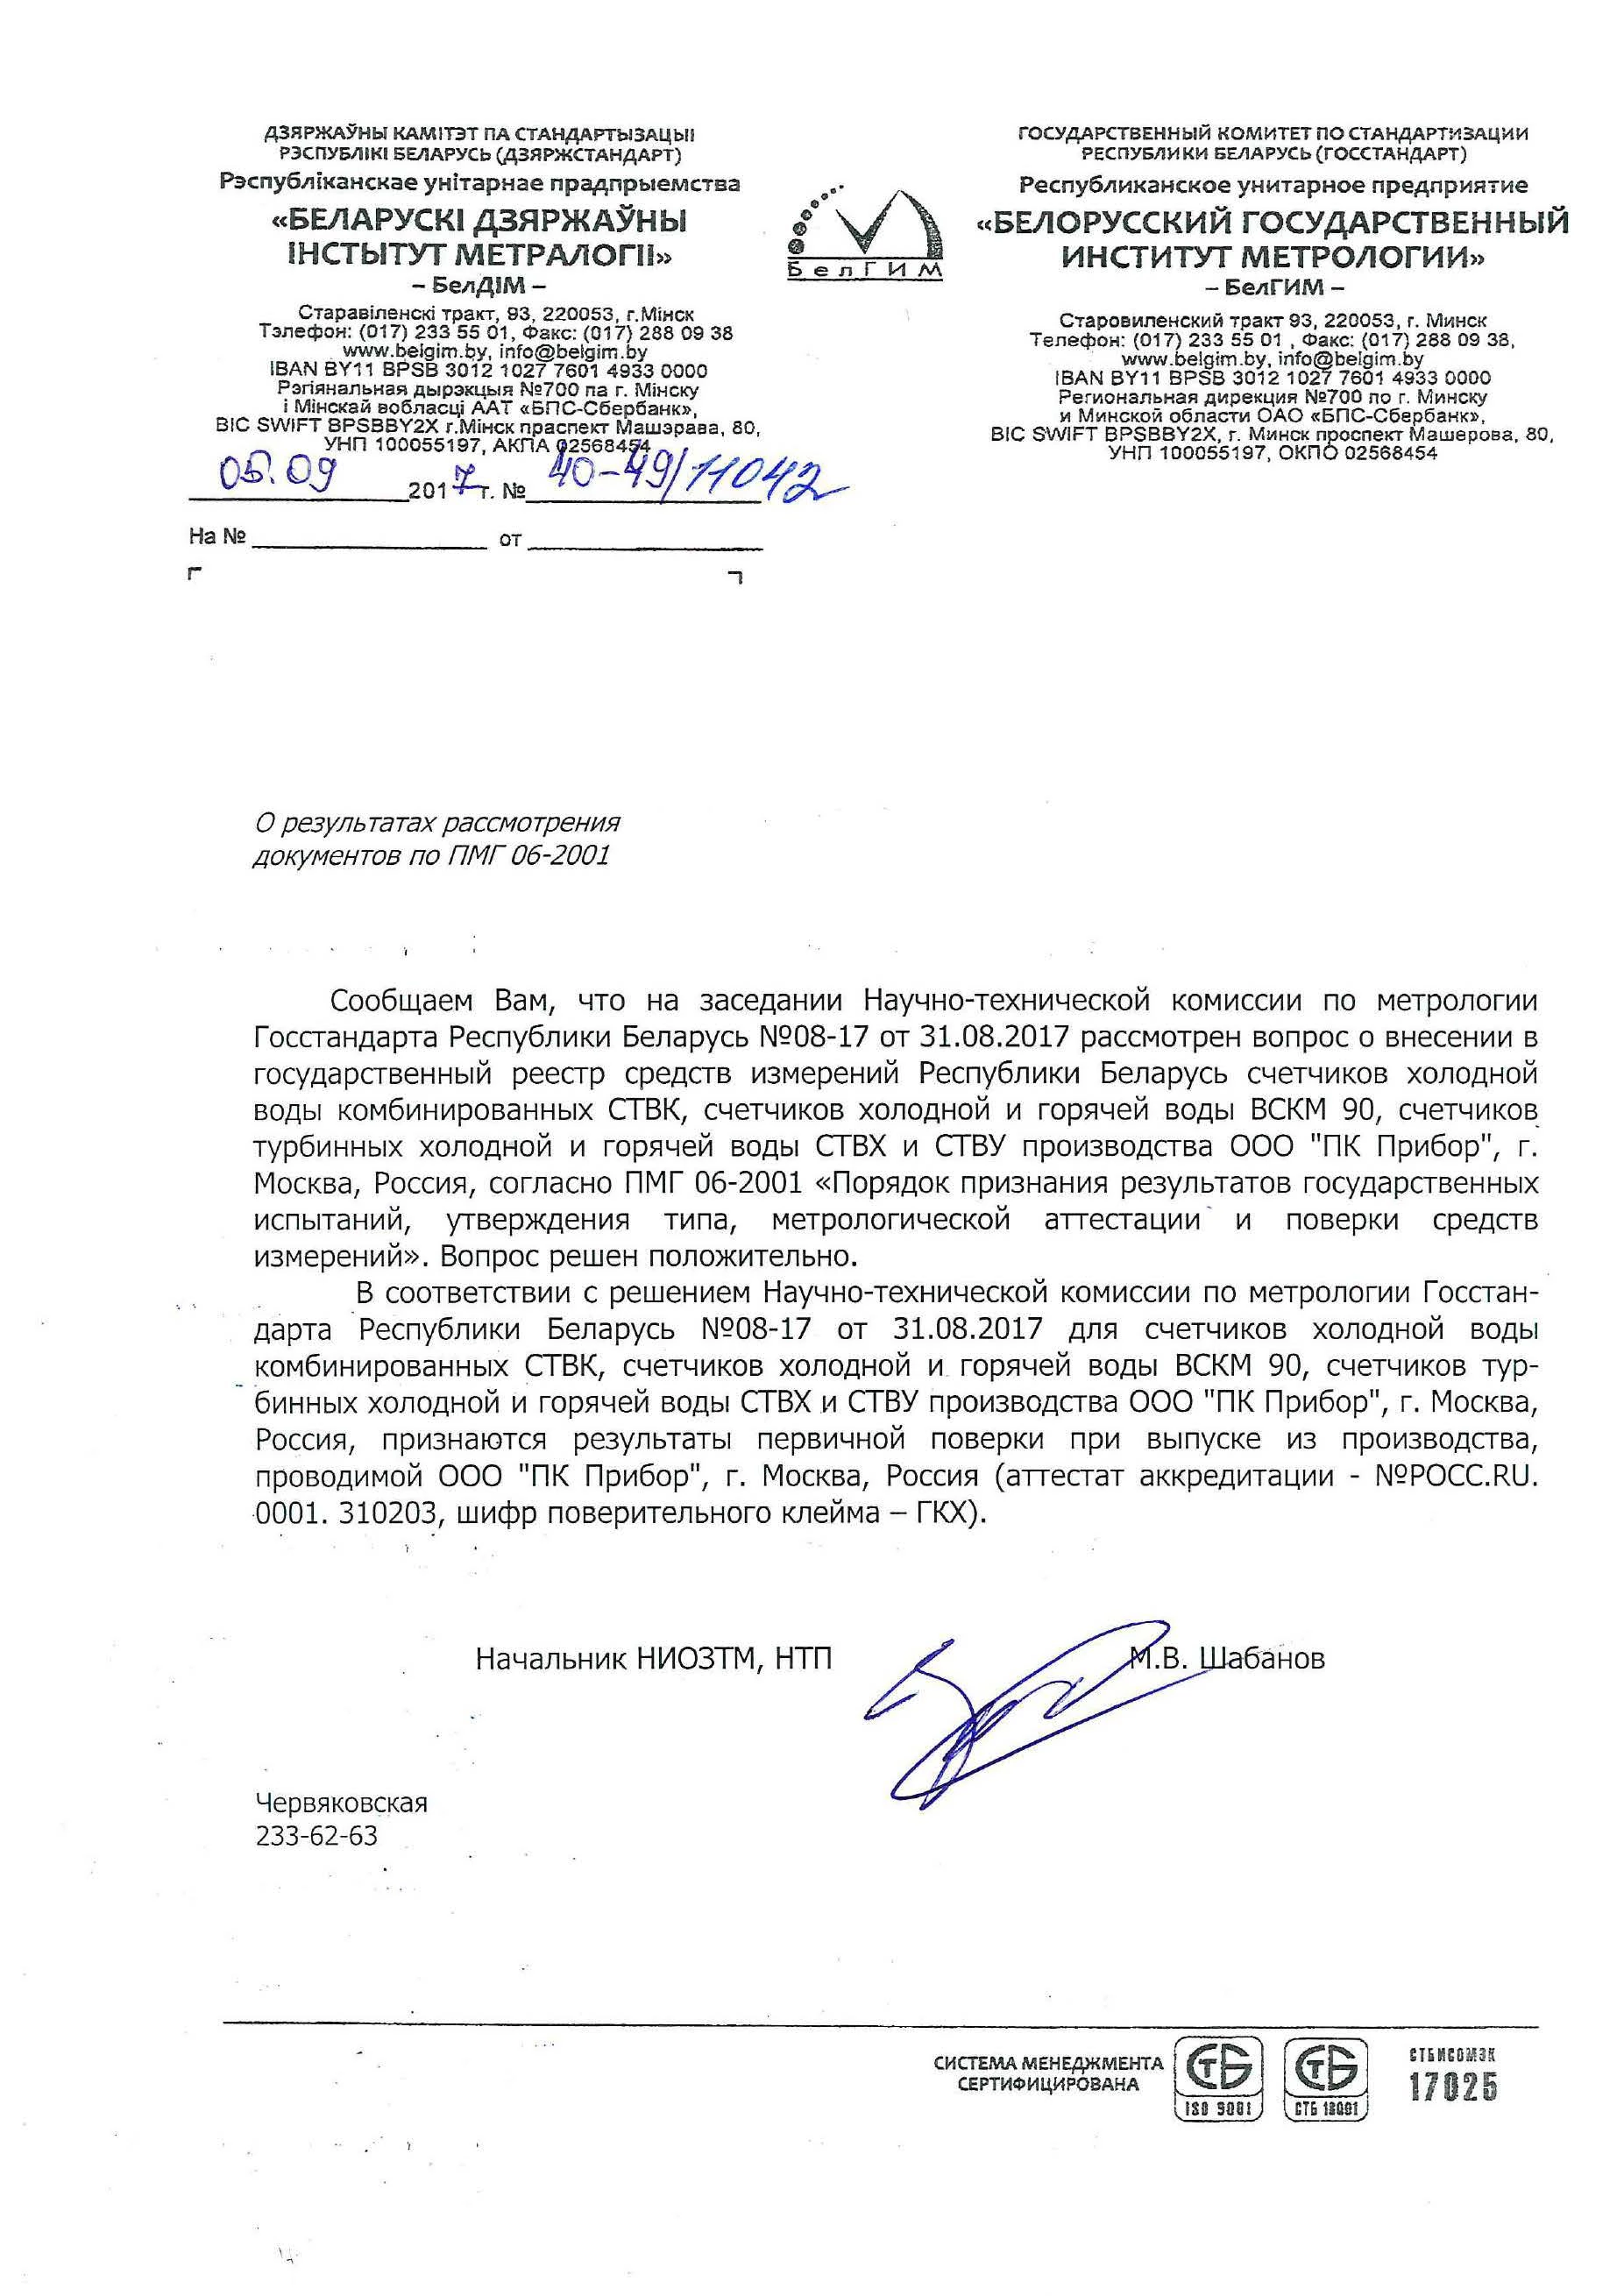 Письмо о признании поверки, Беларусь